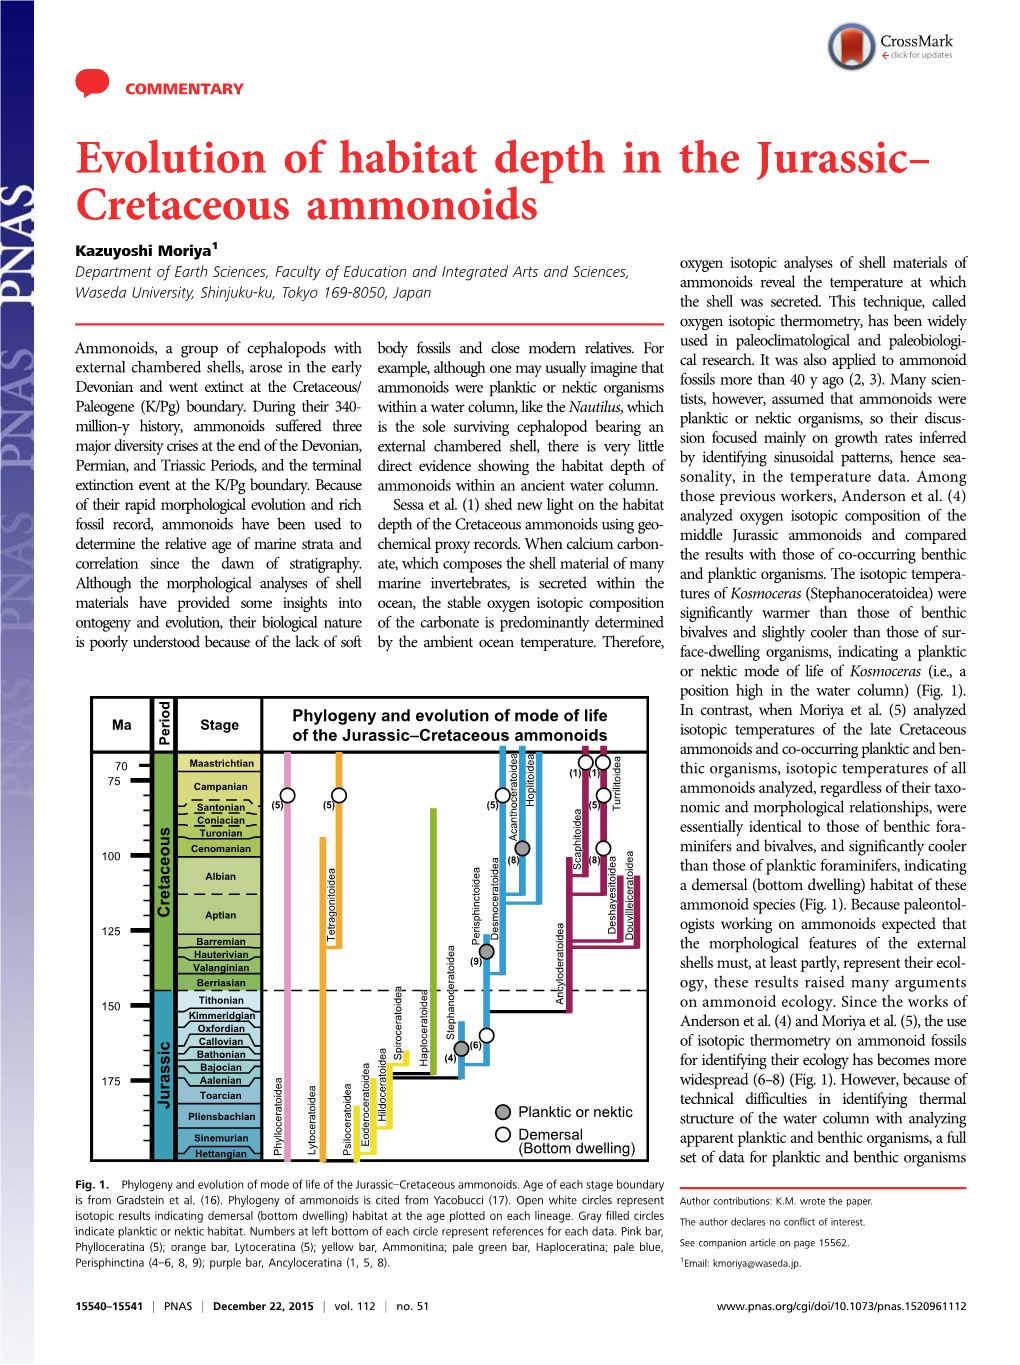 Evolution of Habitat Depth in the Jurassic– Cretaceous Ammonoids